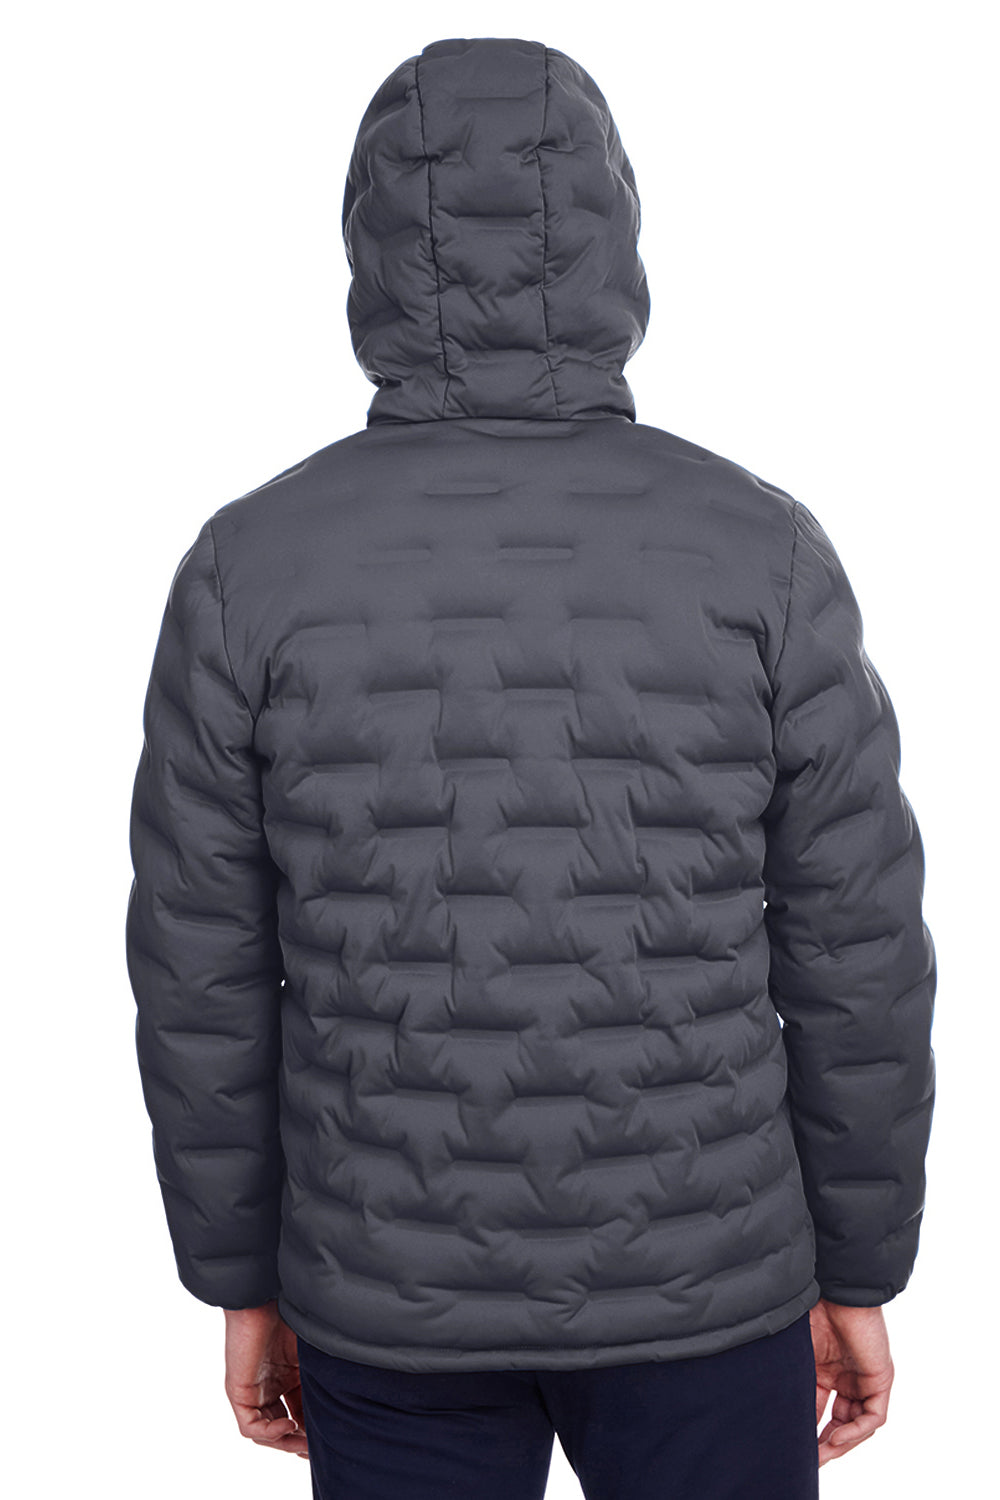 North End NE708 Mens Loft Waterproof Full Zip Hooded Puffer Jacket Carbon Grey/Black Back